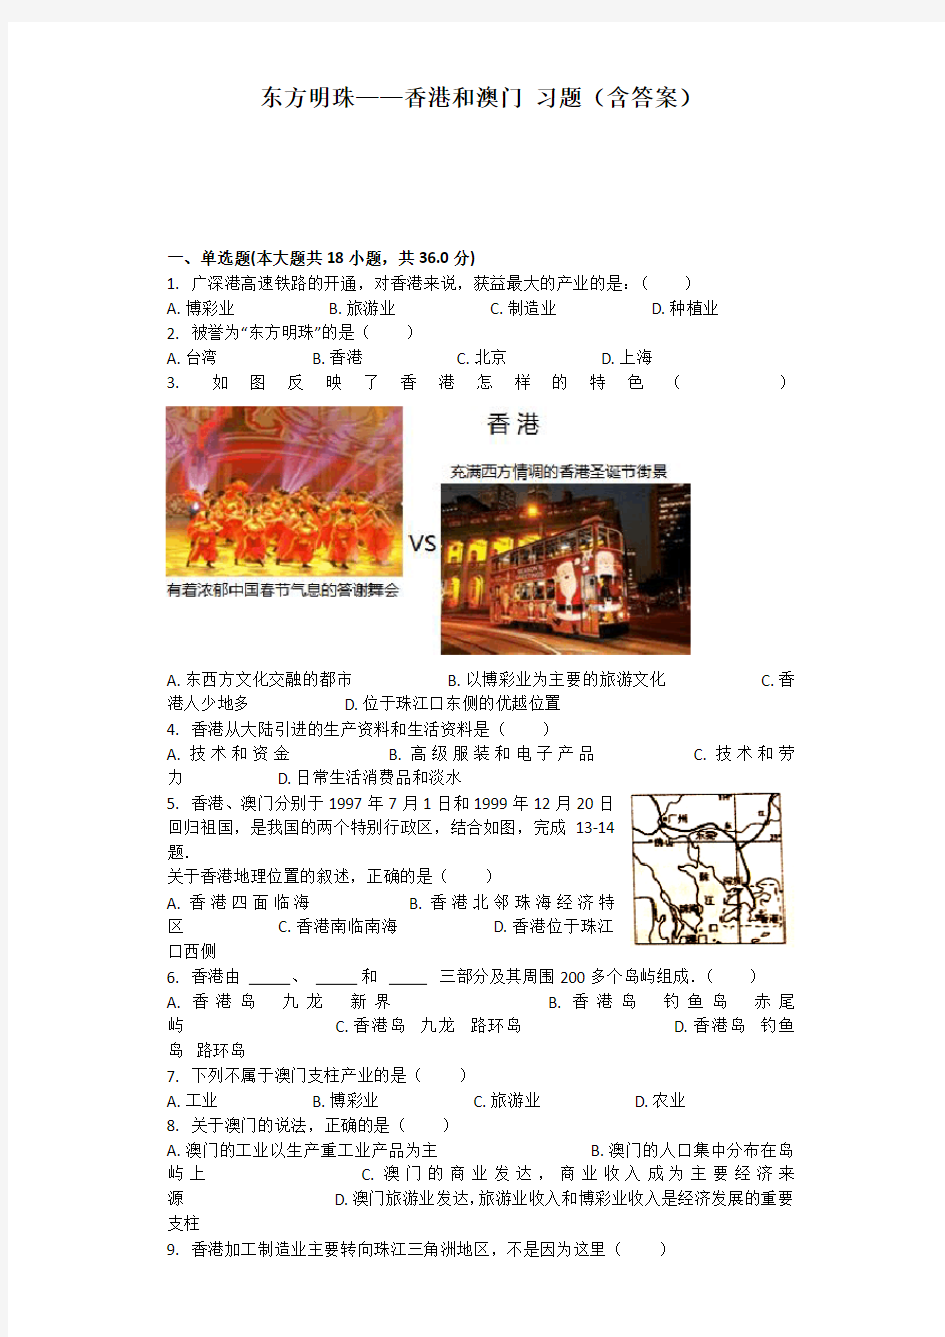 东方明珠——香港和澳门习题(包含答案)